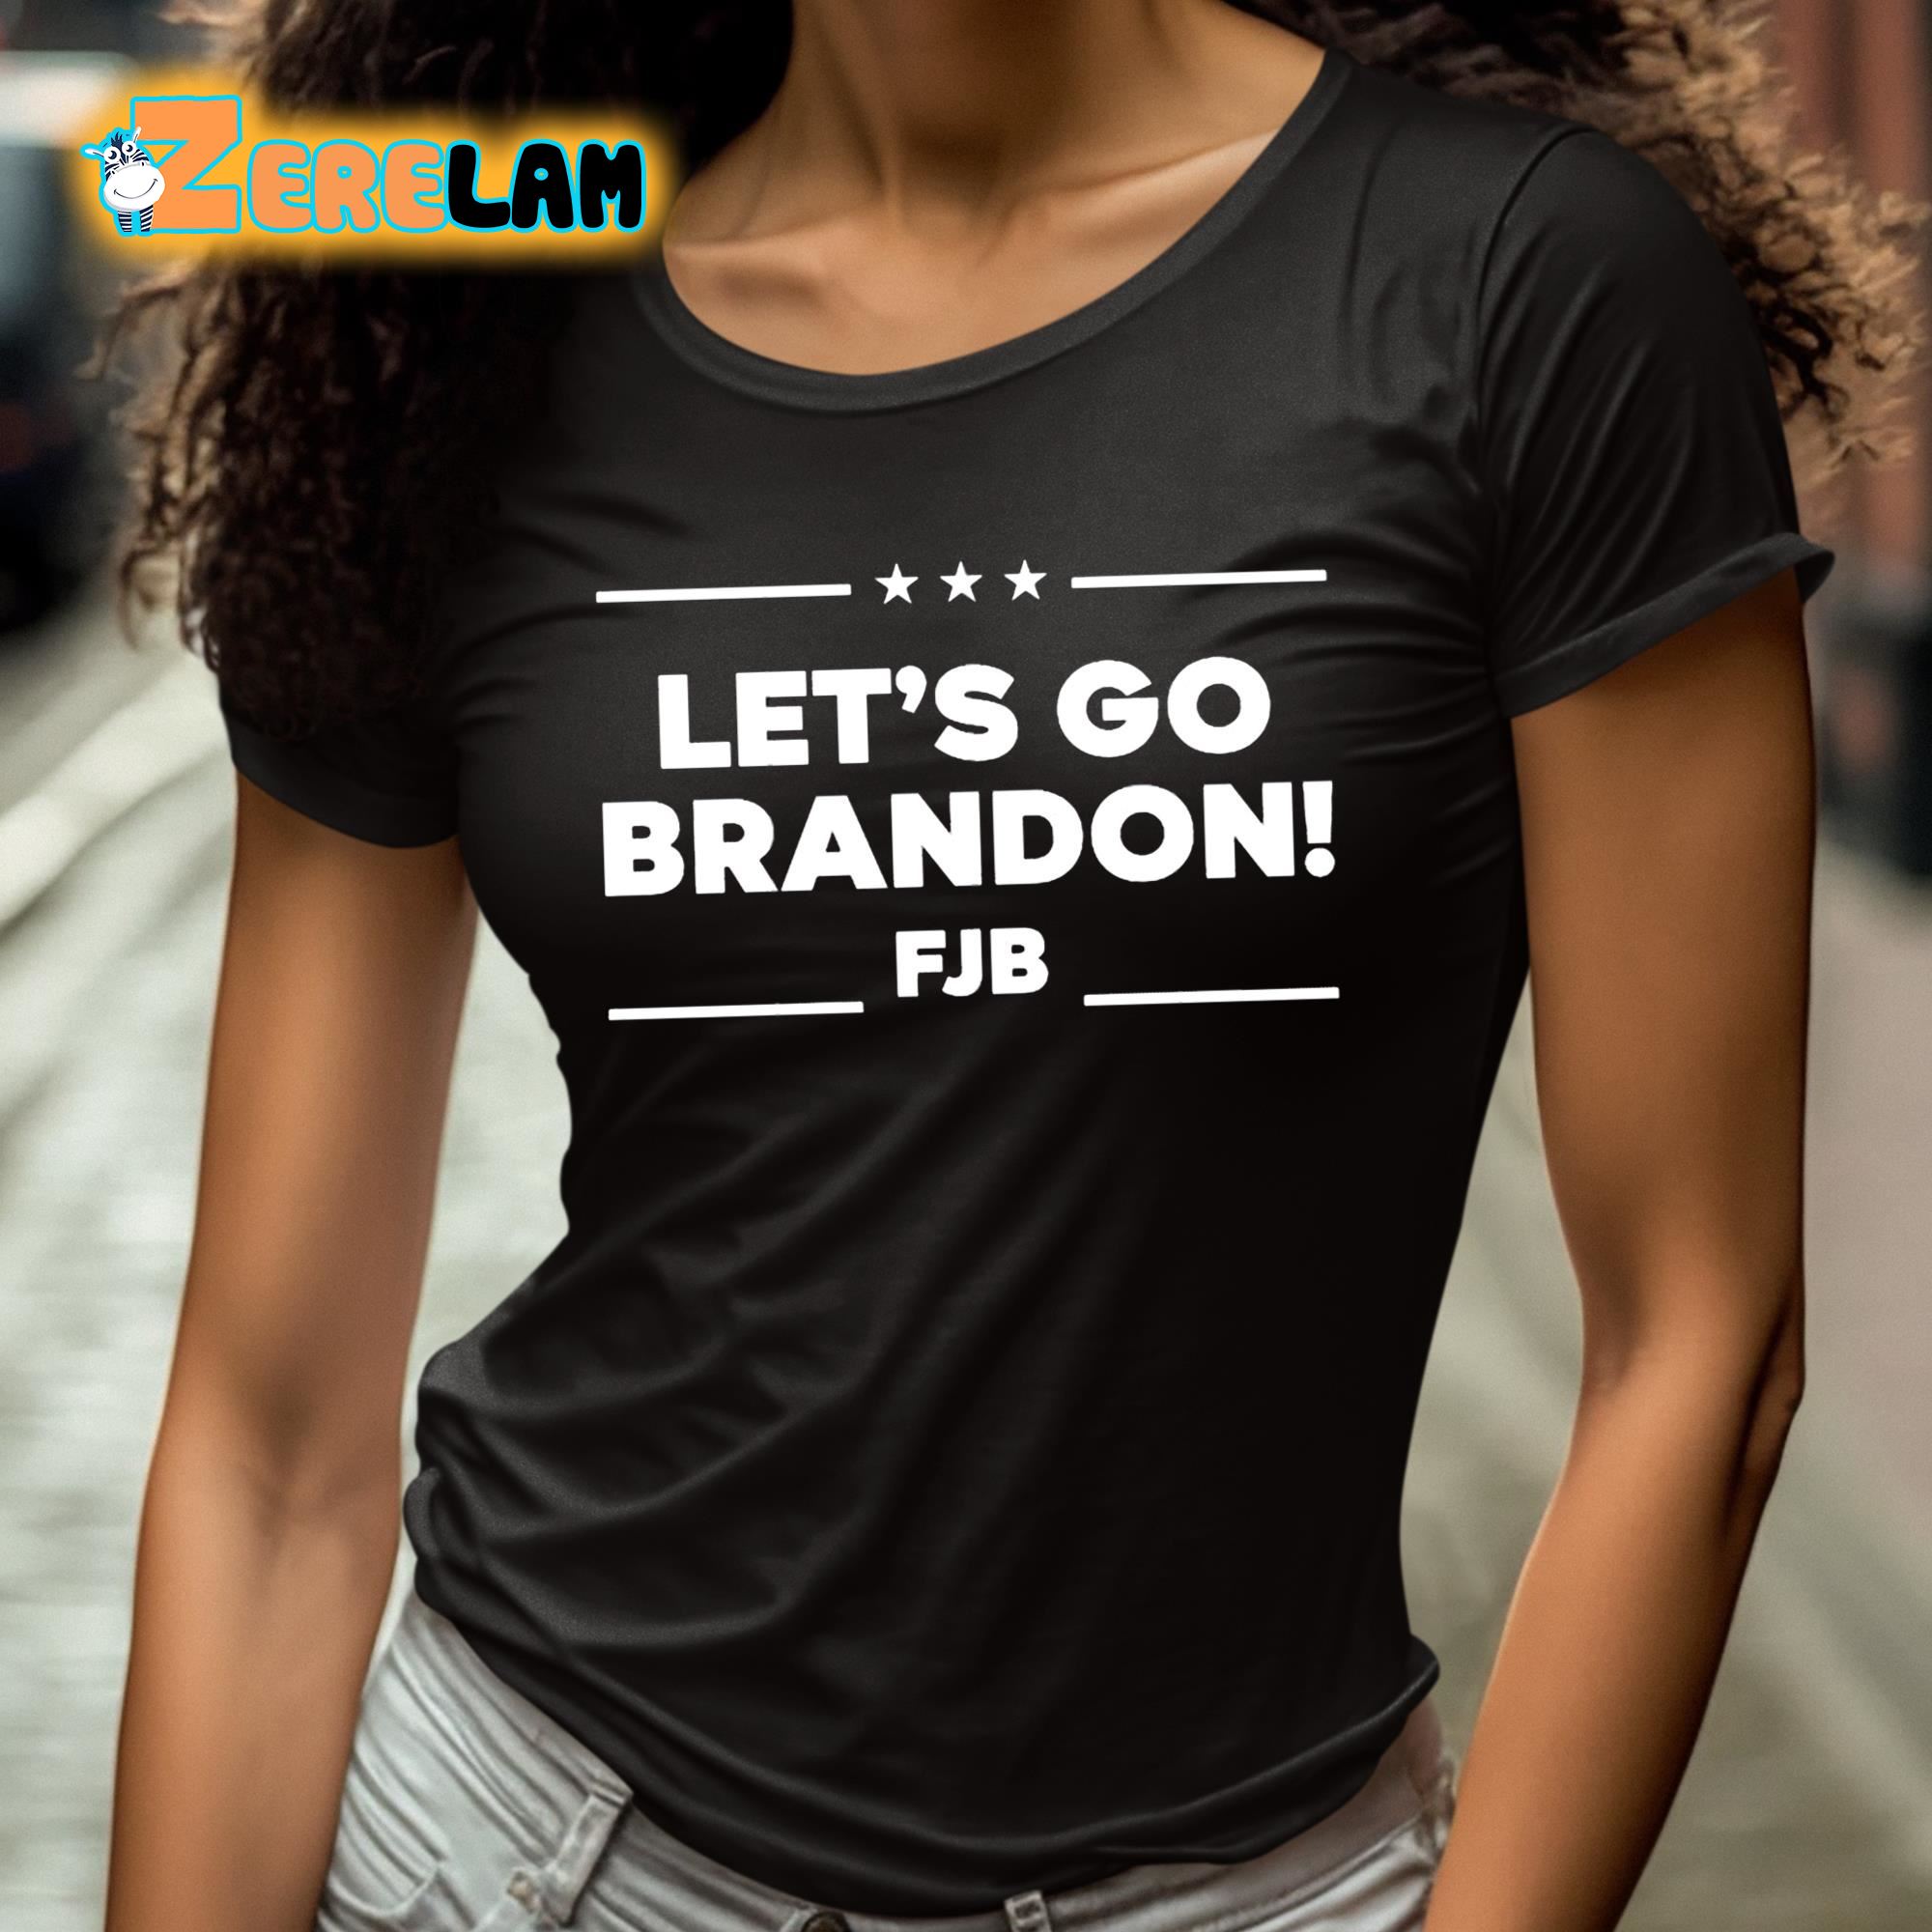 Let's Go Brandon Long Sleeve Dry Fit T Shirt - White